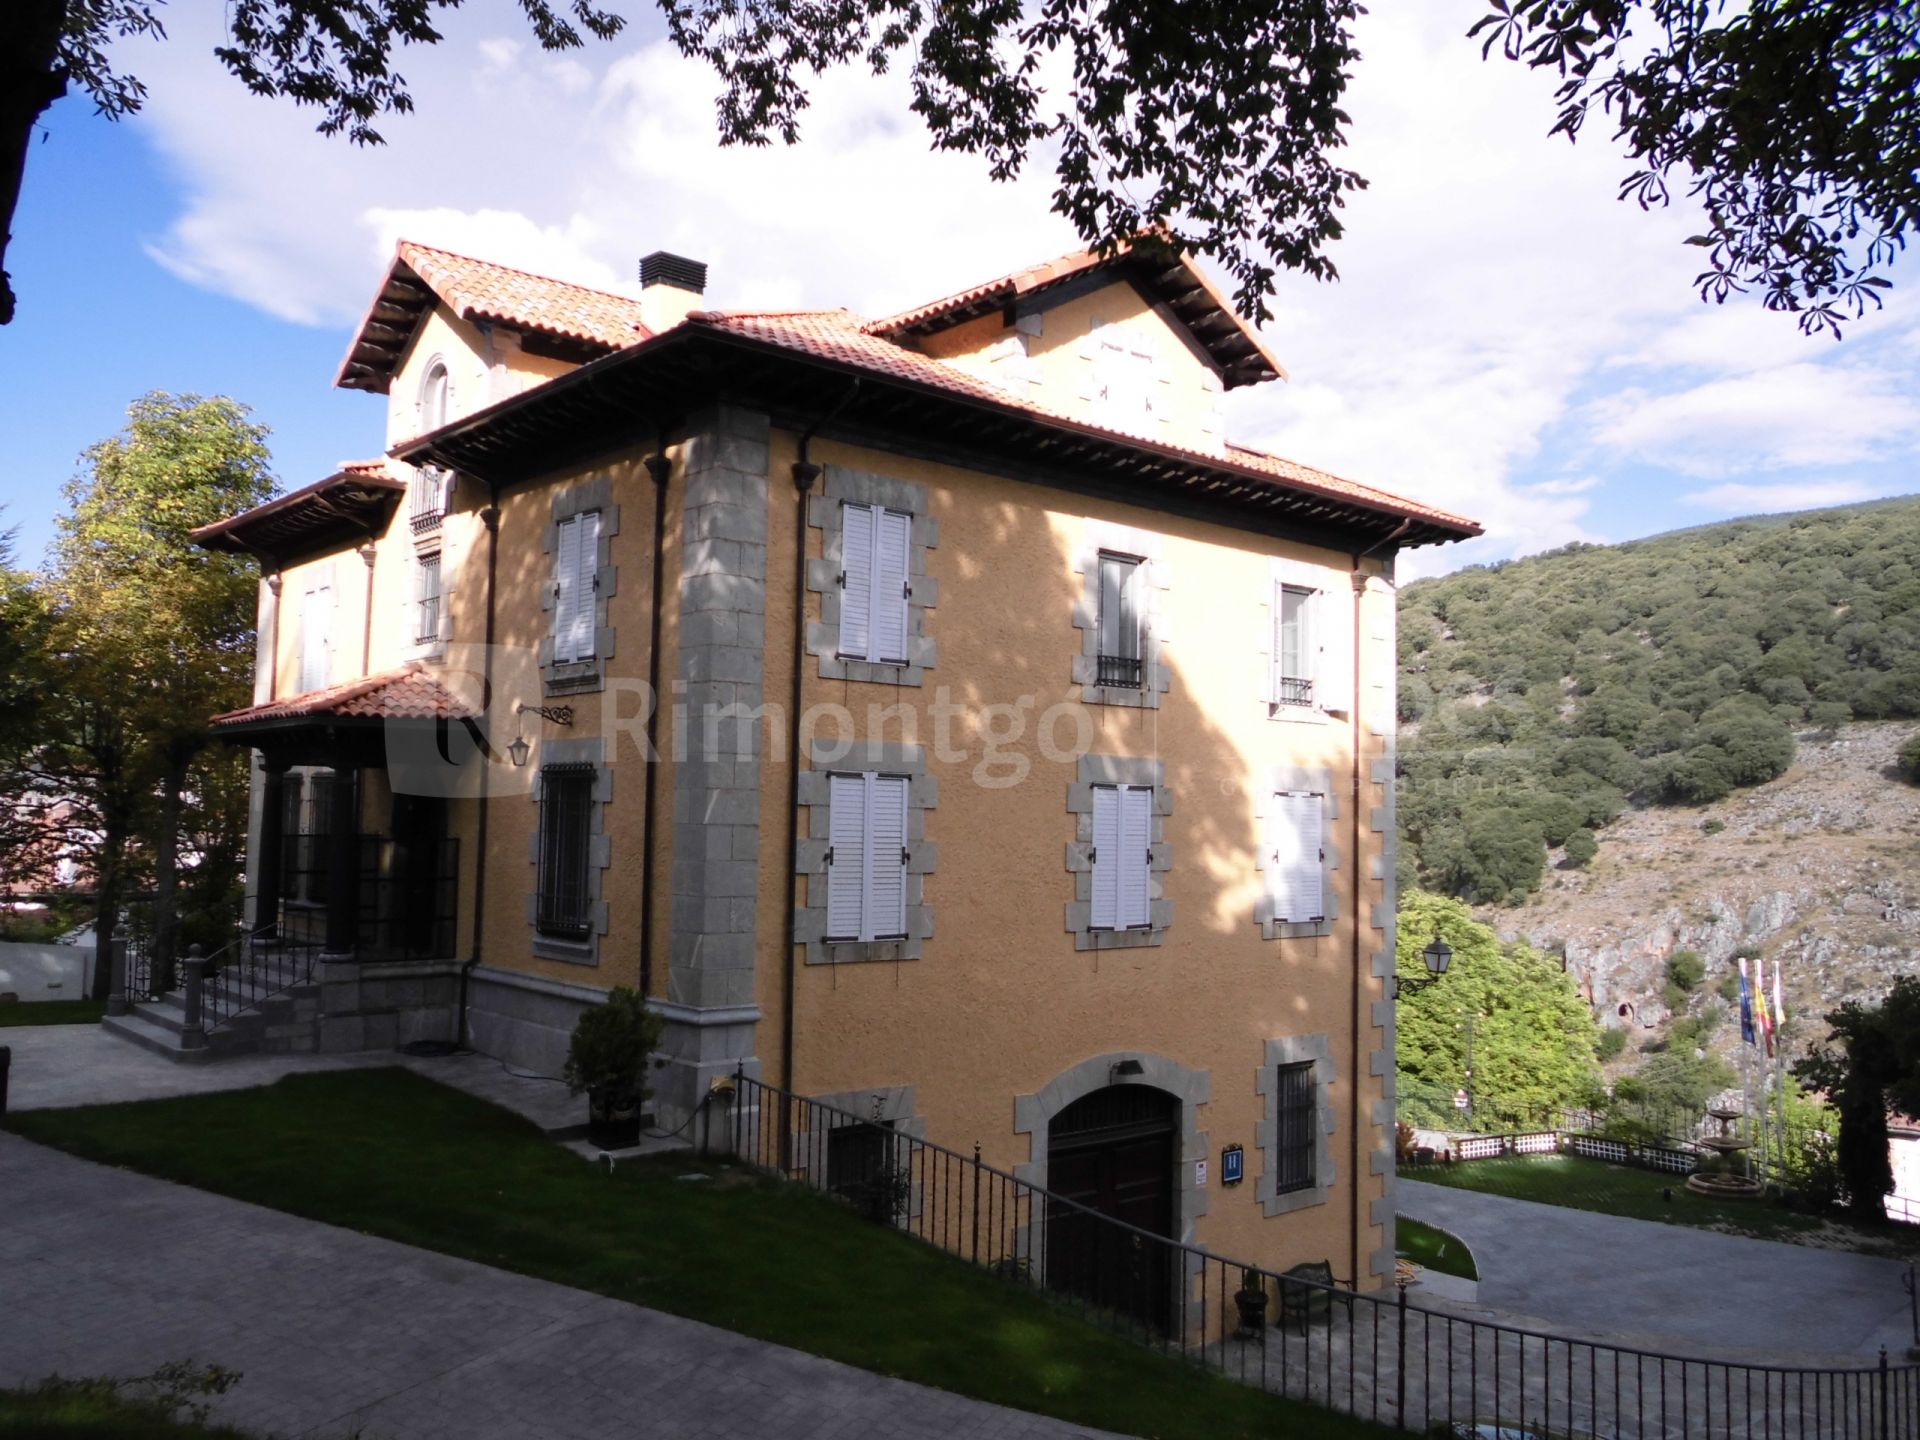 Villa-hôtel de la fin du XIXème siècle au design somptueux dans la région de la Rioja.